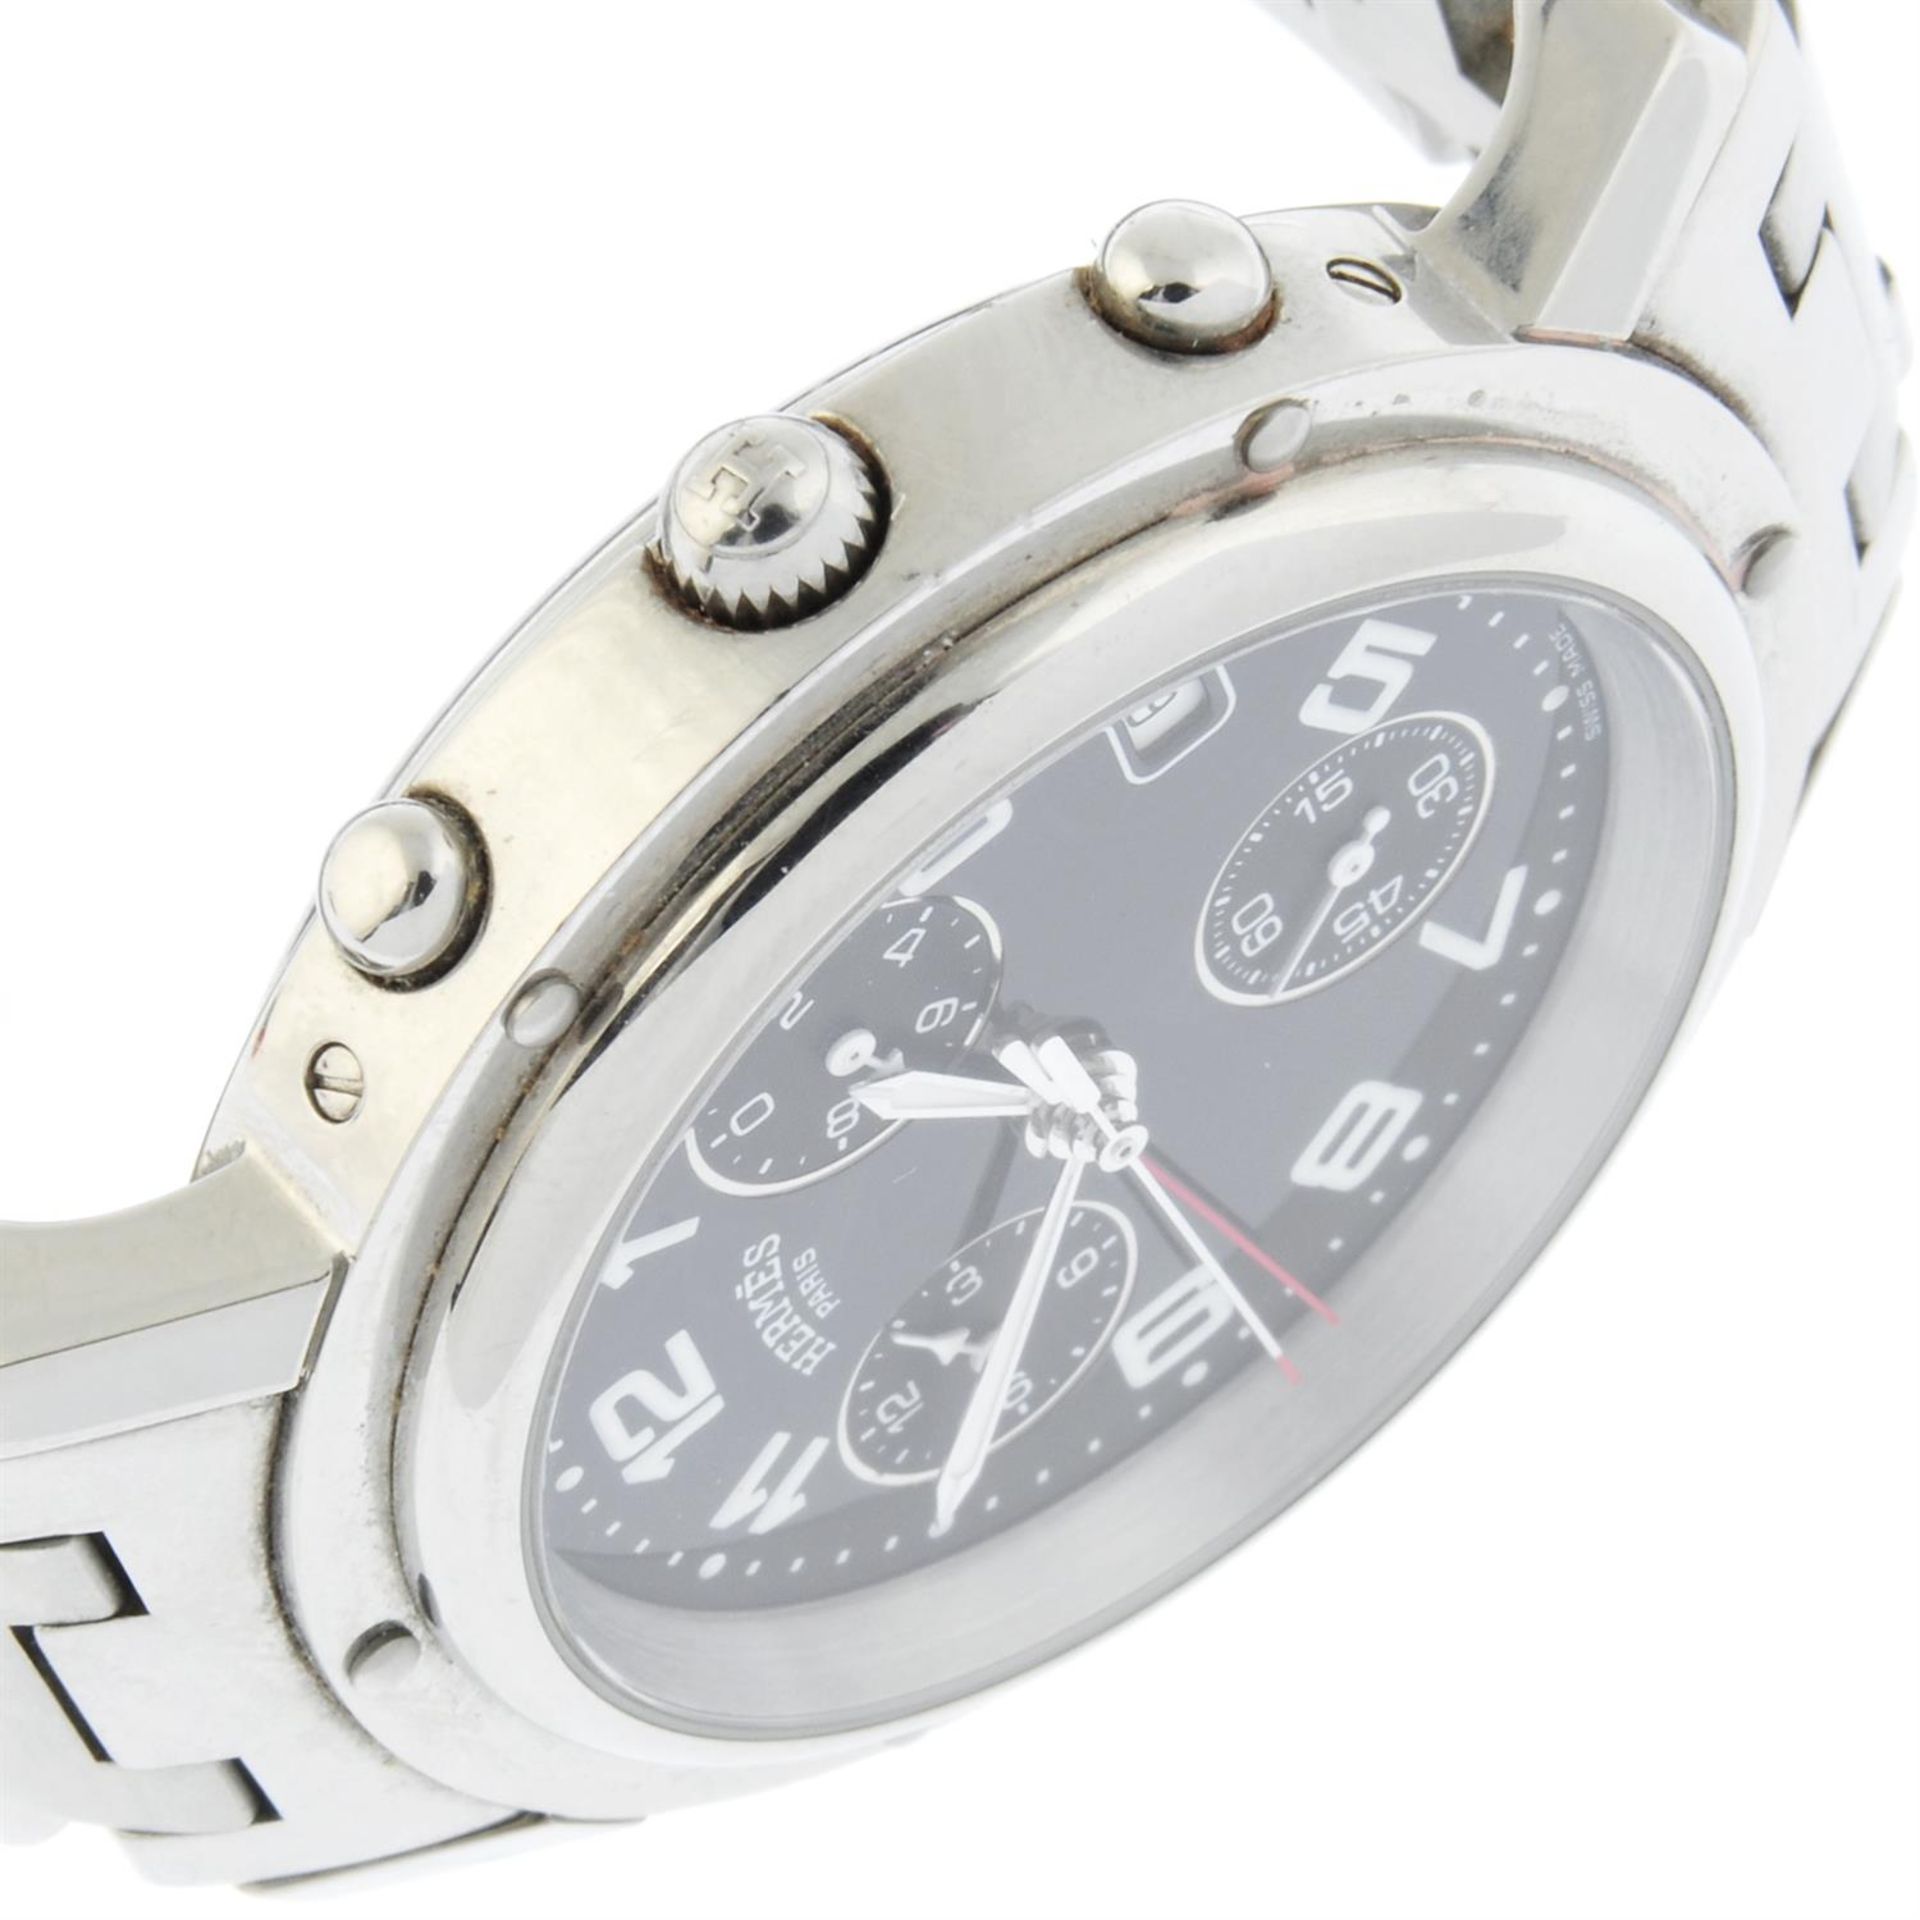 Hermes - a Clipper chronograph watch, 38mm. - Bild 3 aus 5